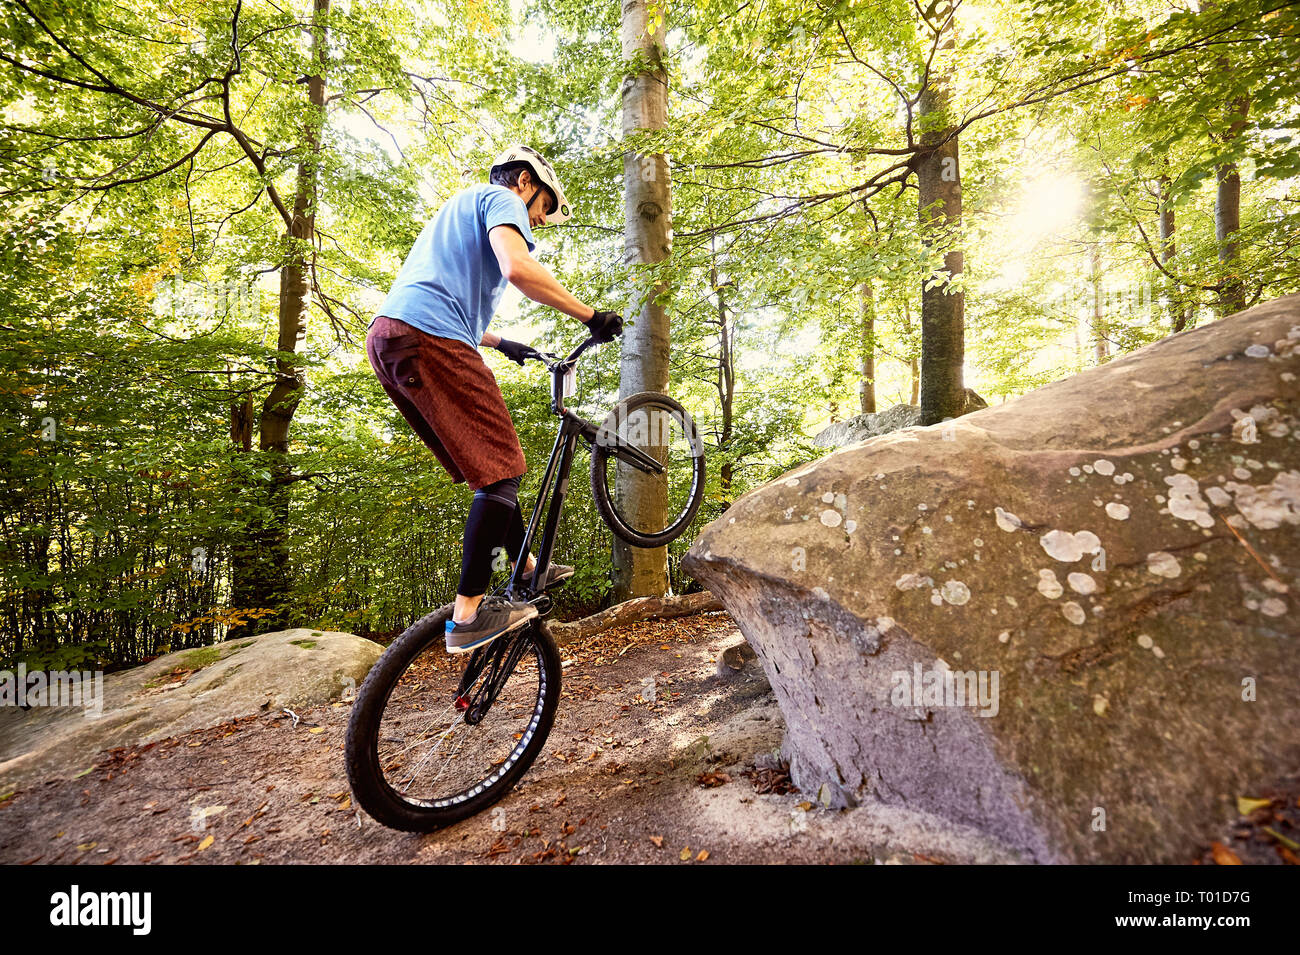 Junge portsman Radfahrer reiten auf der Rückseite Rad Trial Bike, mann Reiter balancing am Rande des Big Boulder im Wald im Sommer sonnigen Tag. Konzept o Stockfoto